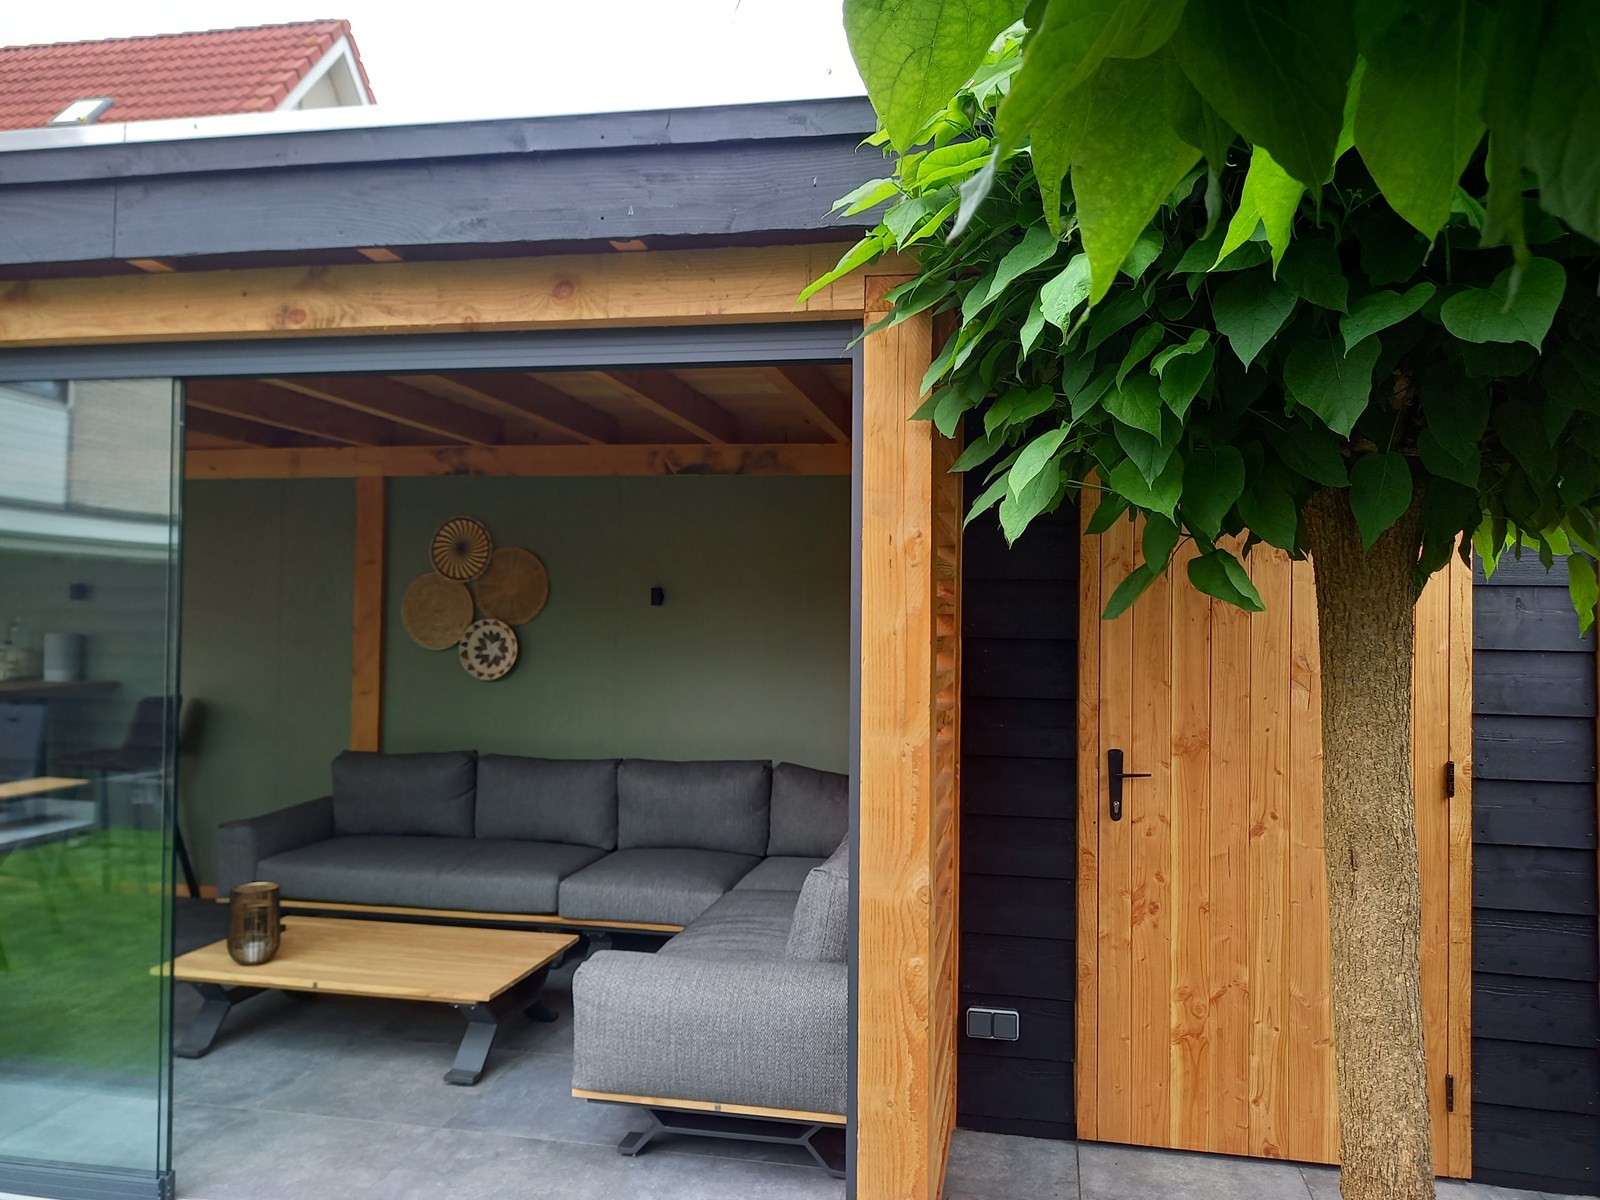 Aandringen Verdraaiing Componeren Luxe tuinhuis met sedum dak en gaskachel - Bergveranda.nl